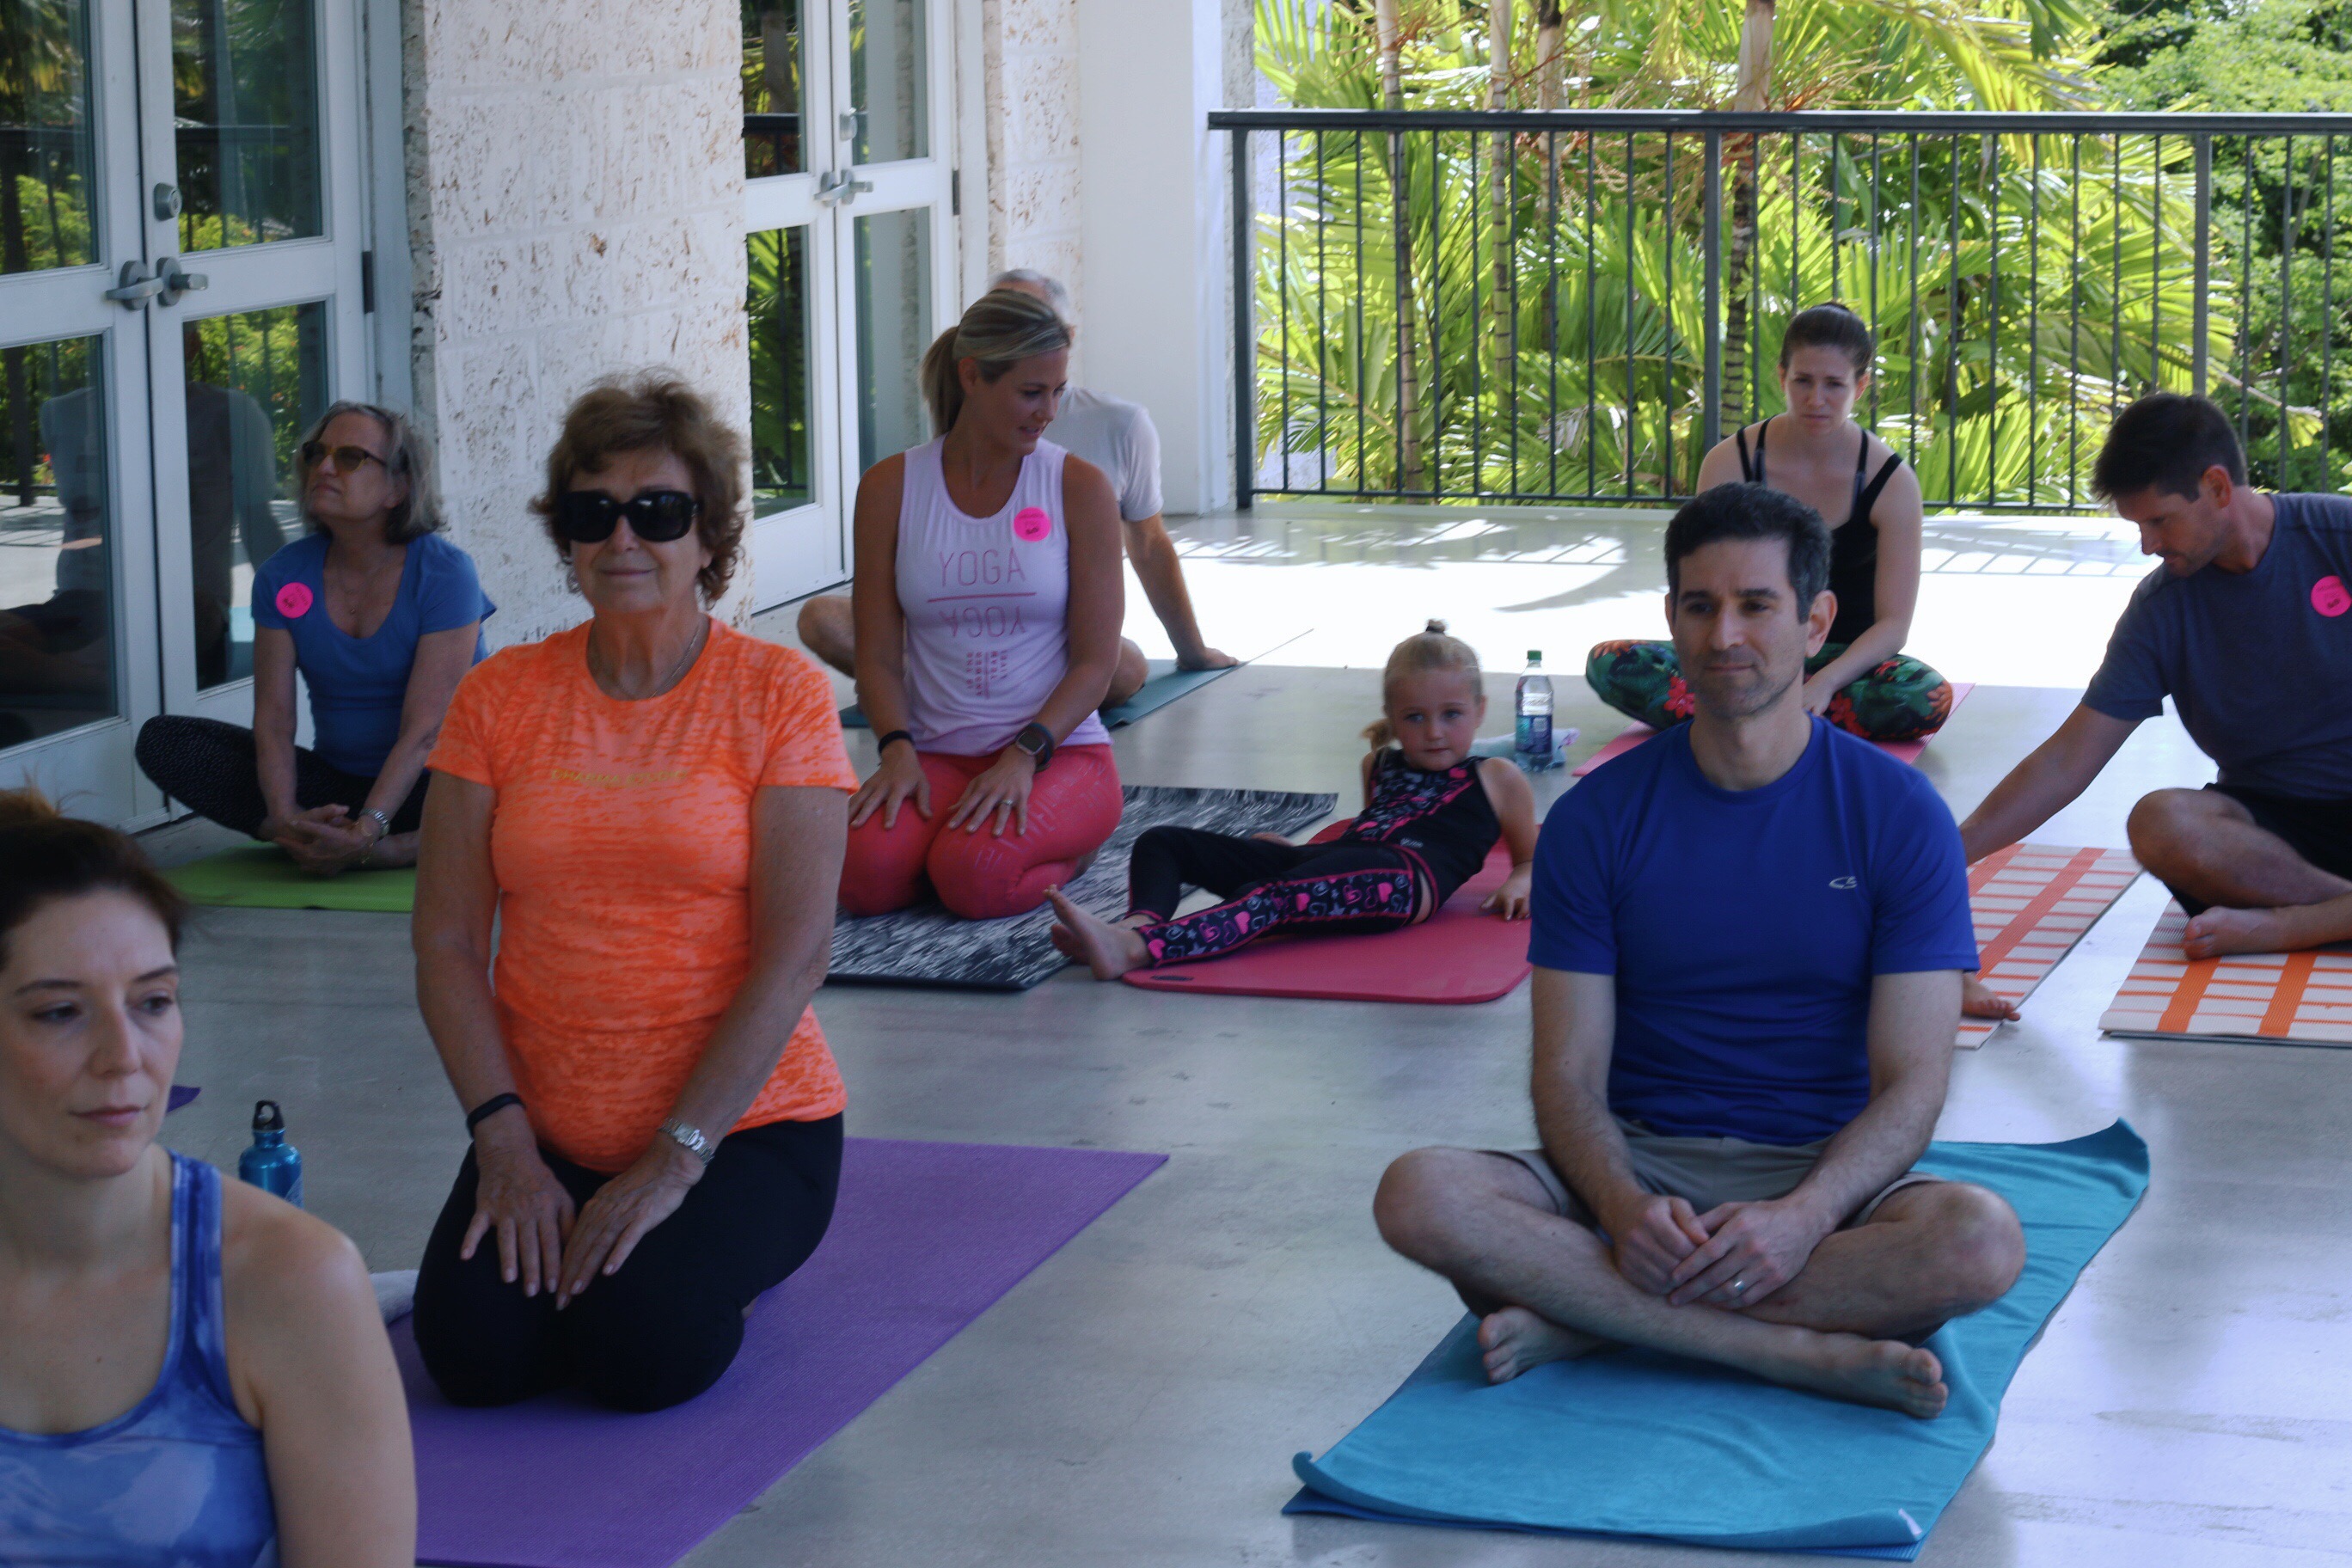 Outdoor Yoga and Fairchild Tropical Botanic Garden in Coral Gables, Florida - Miami